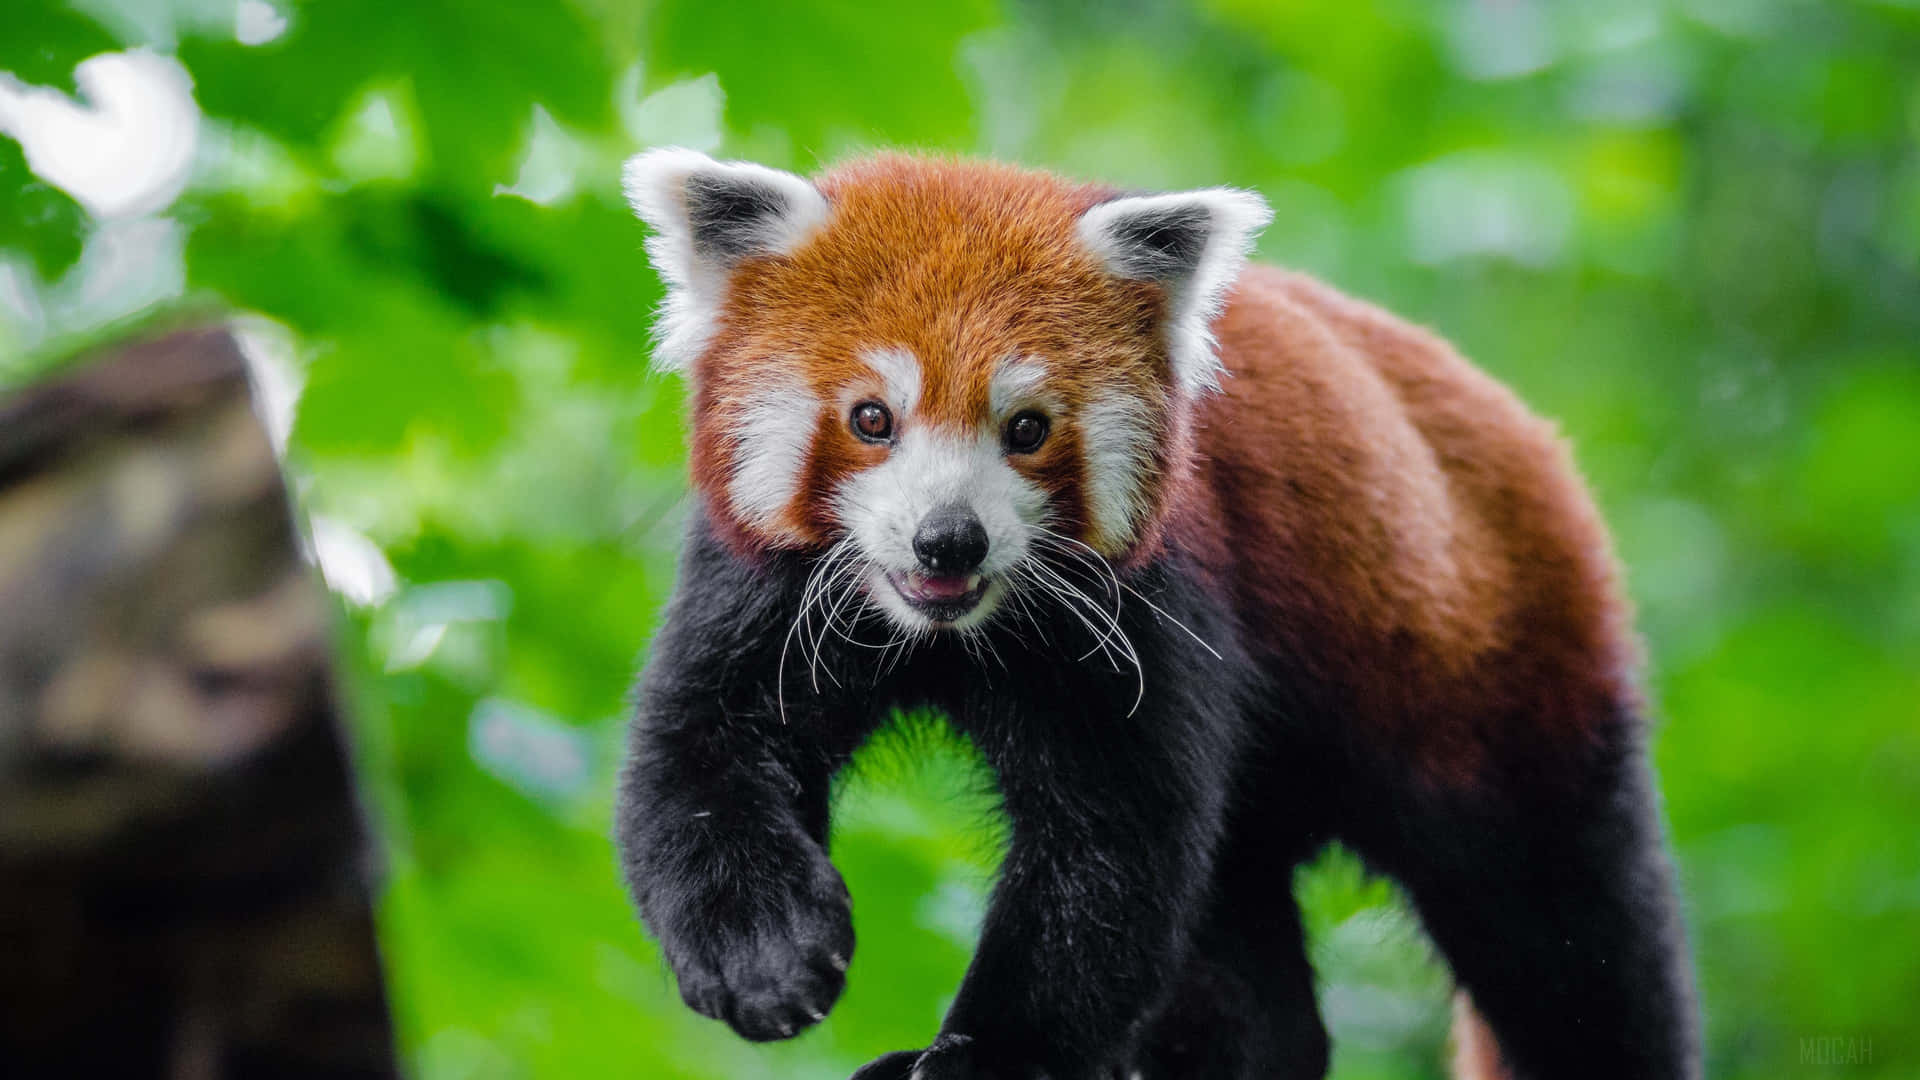 Adorable Red Panda in Its Natural Habitat Wallpaper